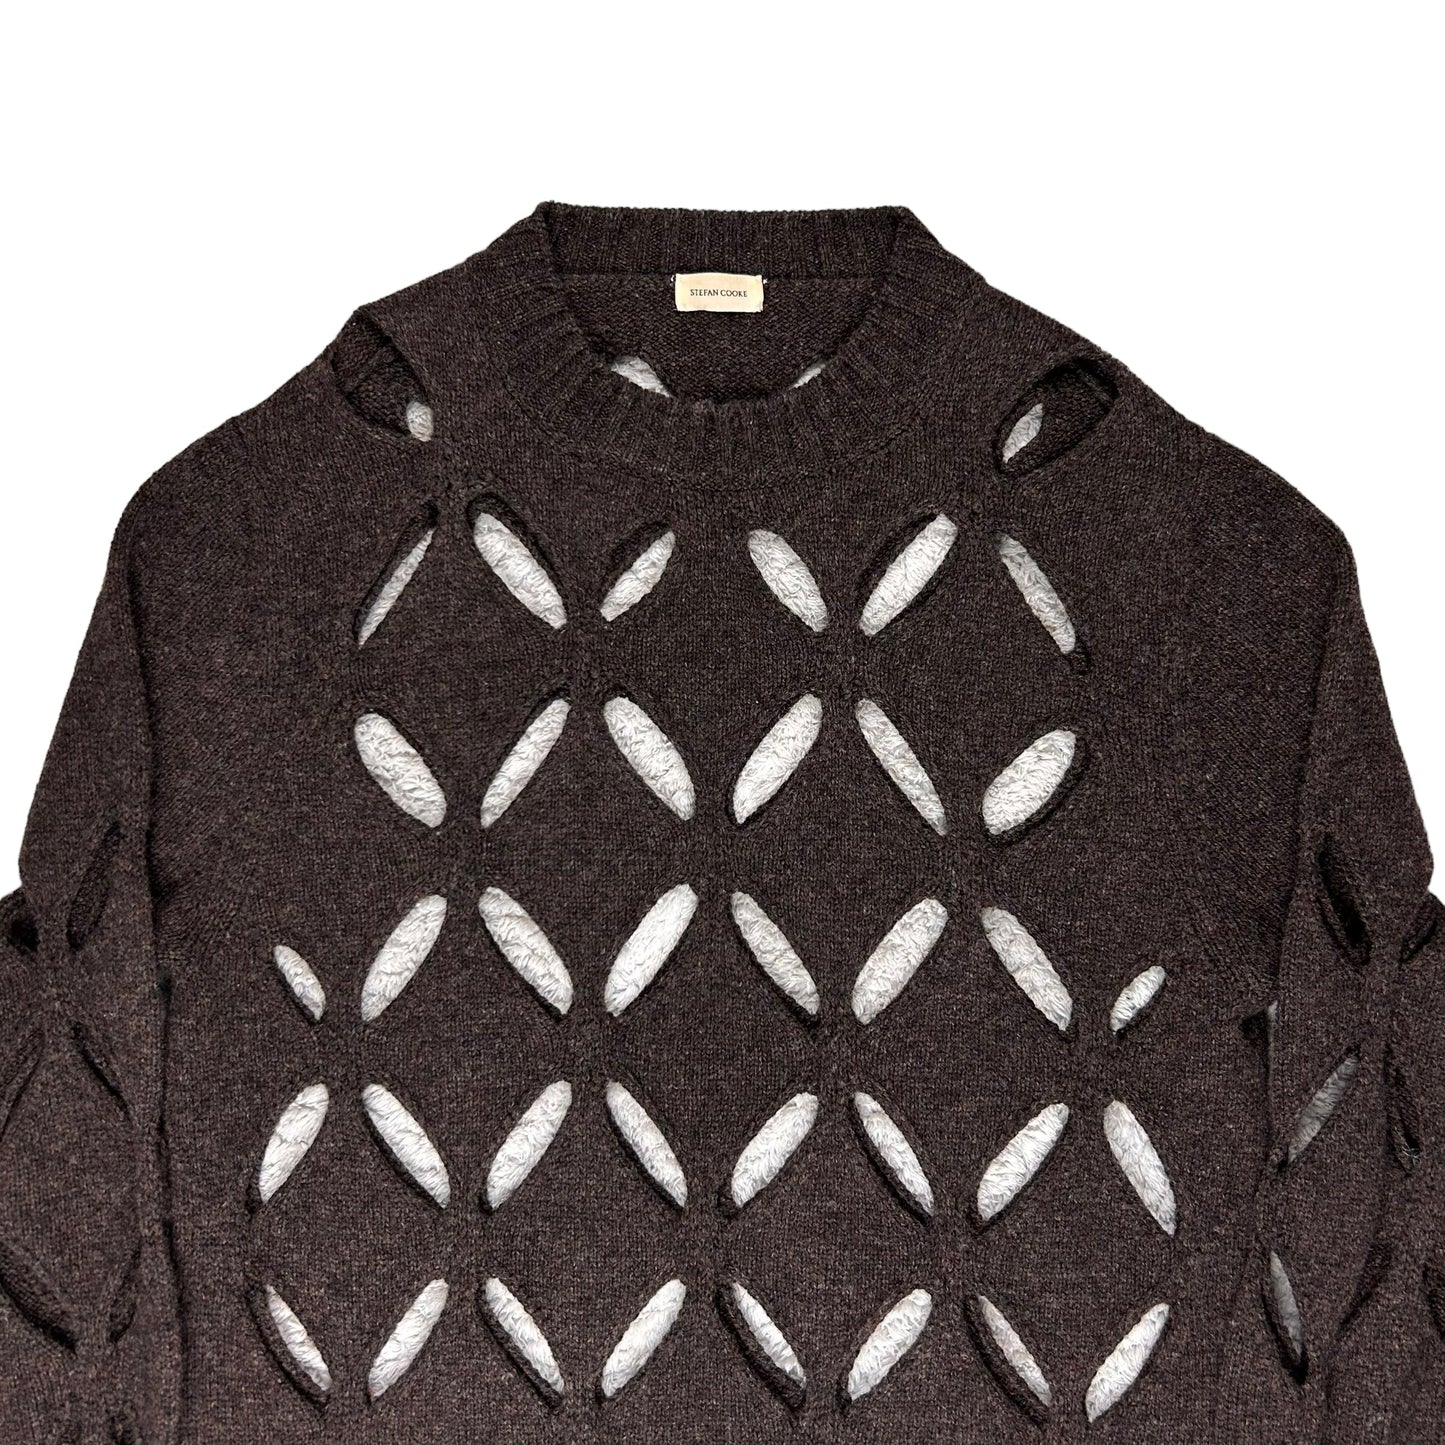 Stefan Cooke Diamond Slashed Knit Sweater - AW20